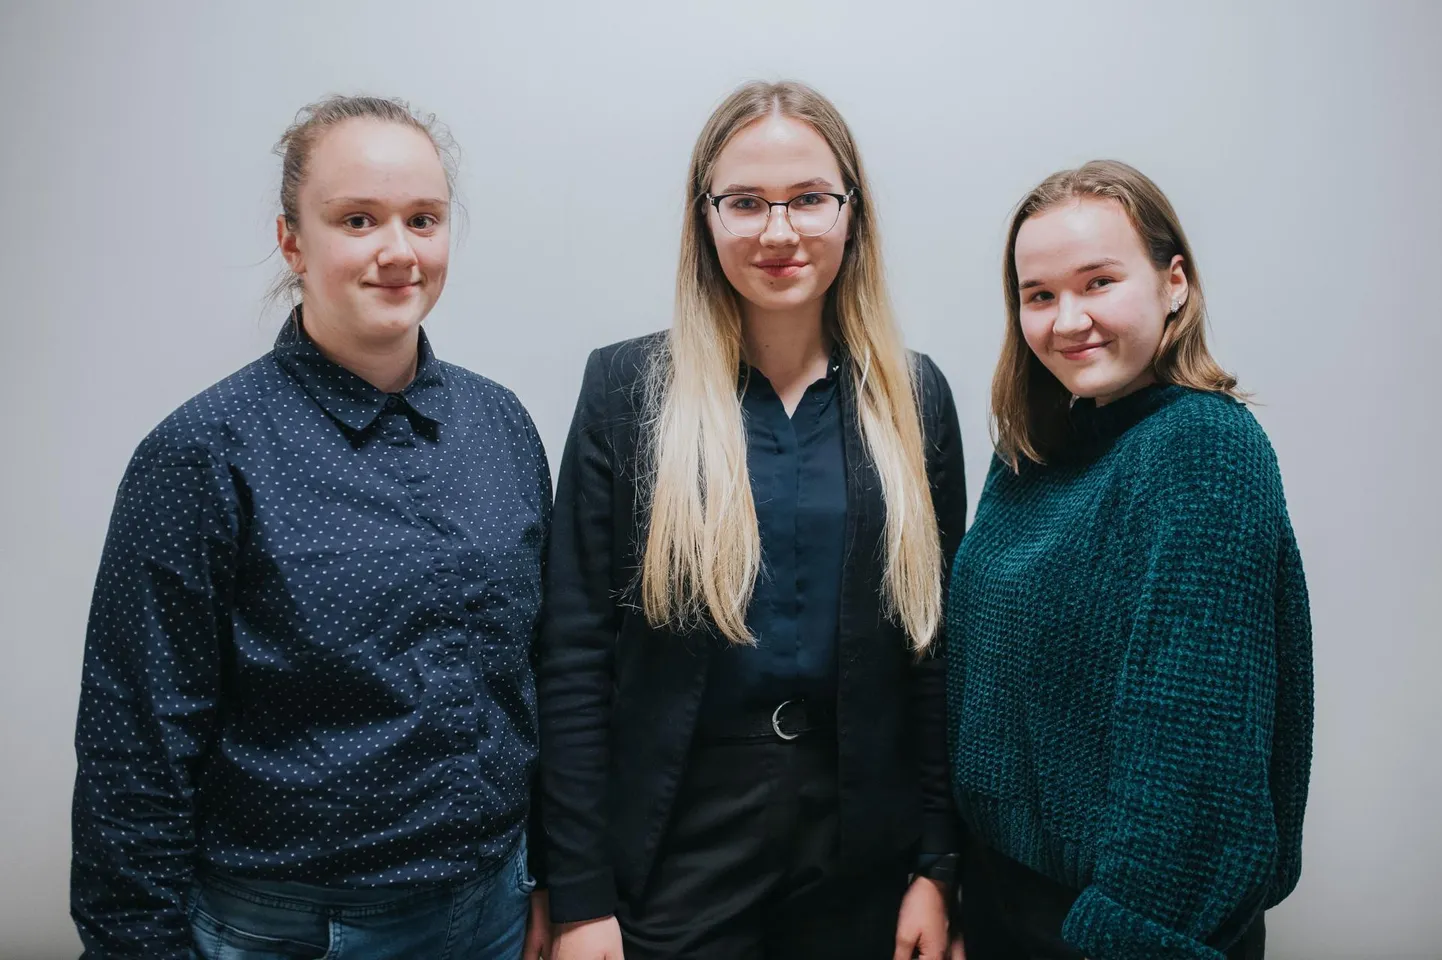 Viljandi noortevolukogu uus juhatus koosneb neidudest. Fotol on (vasakult) protokollija Eeva Vitsut, spiiker Ursula Ilves ja asespiiker Grete Roostik.